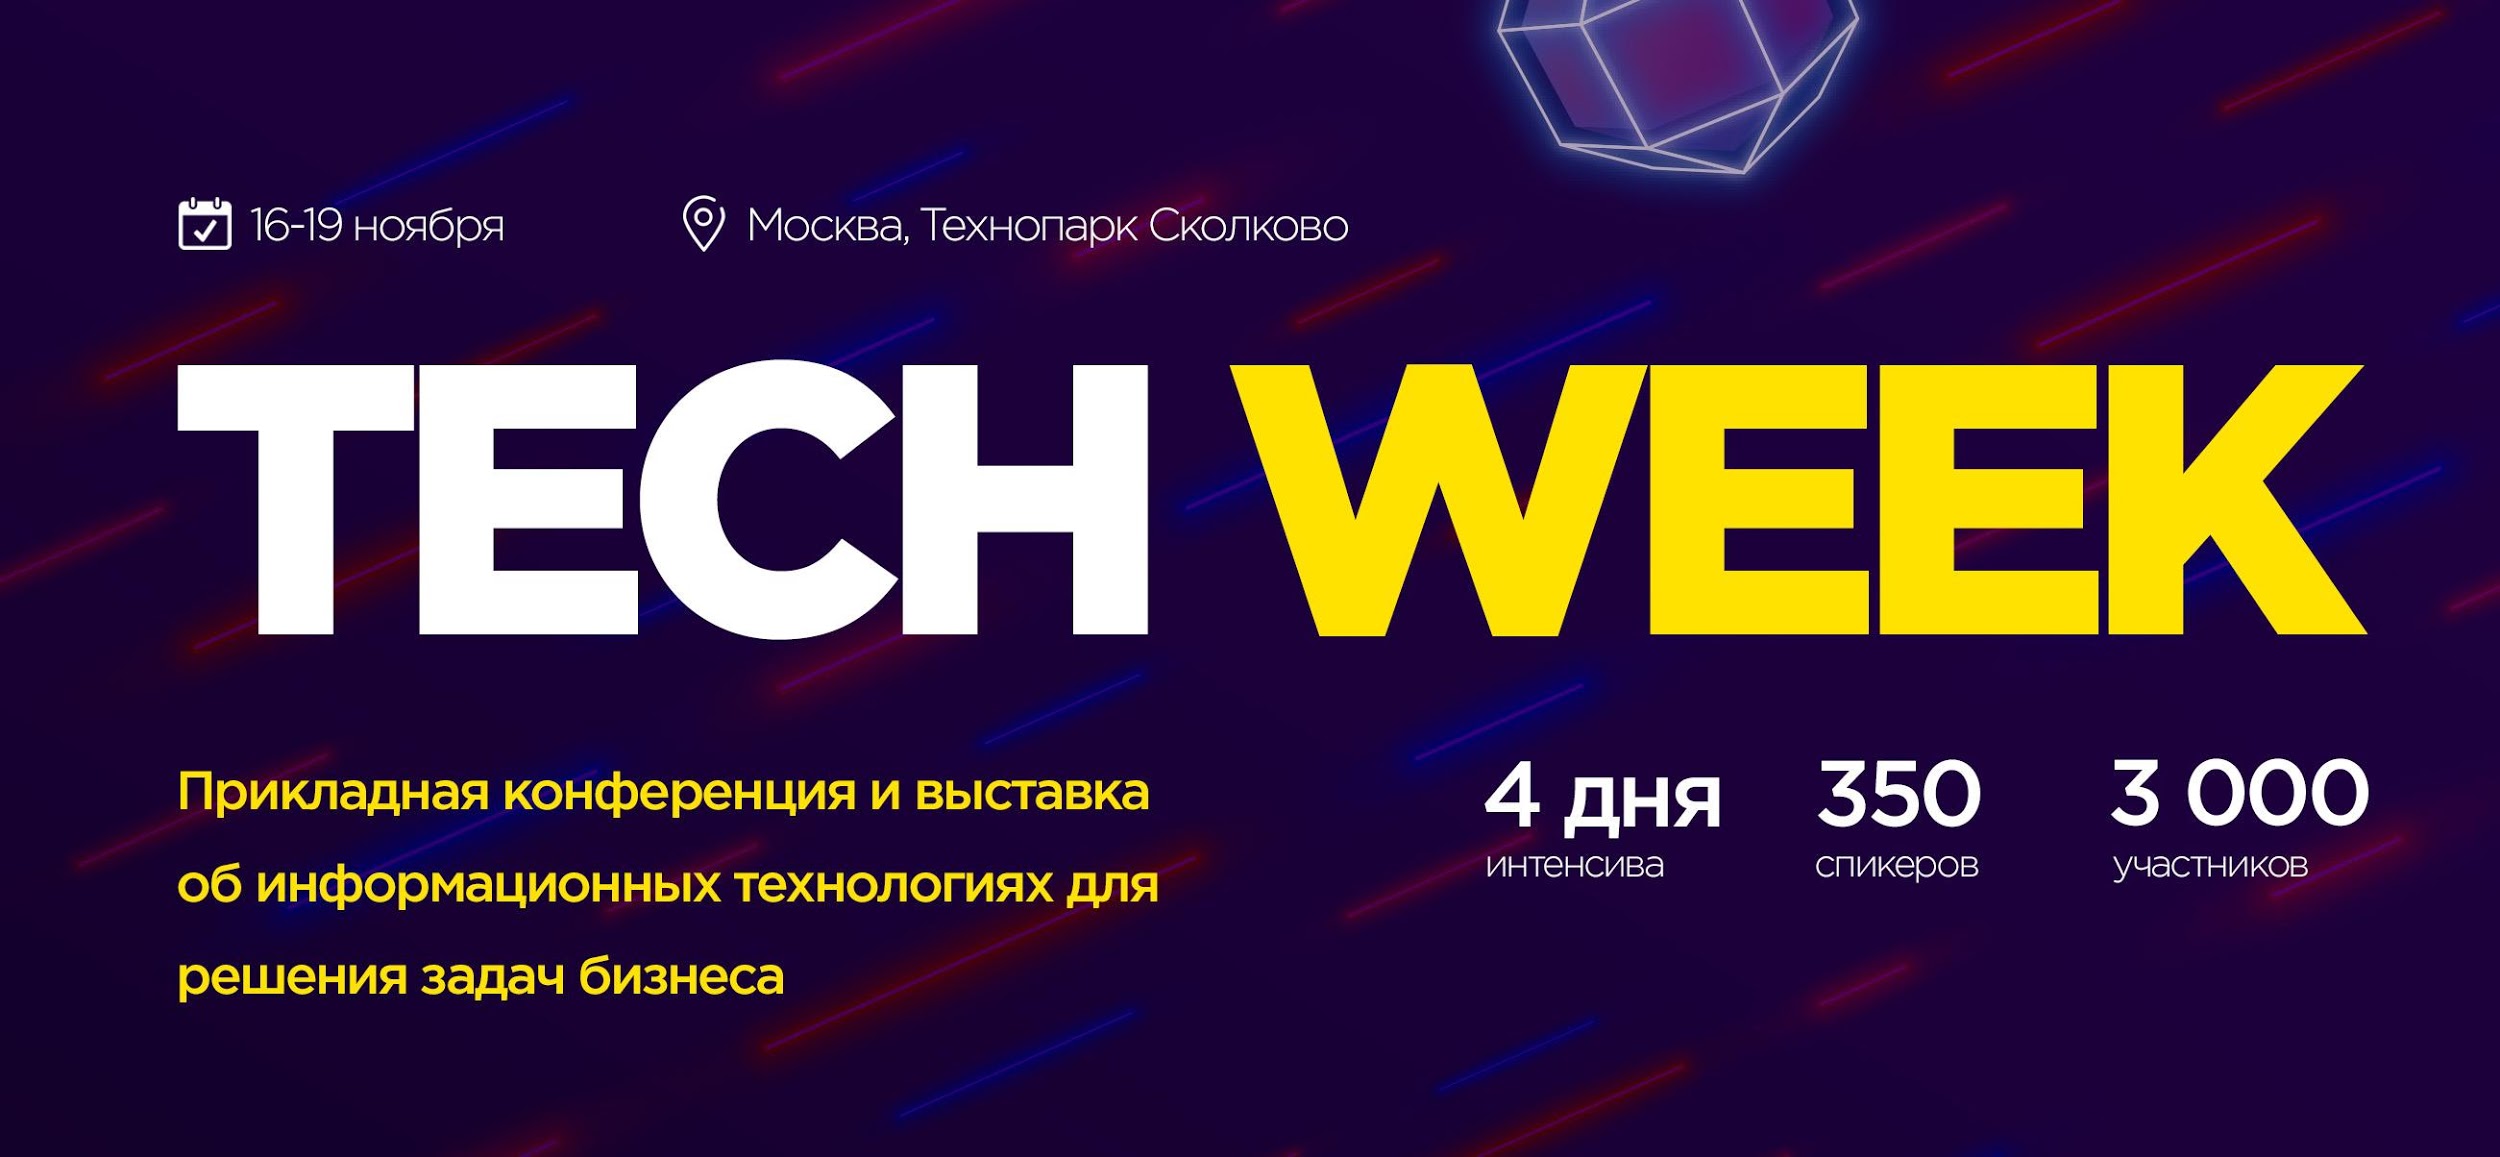 Самая масштабная конференция по информационным технологиям — Tech Week 2020 в Москве